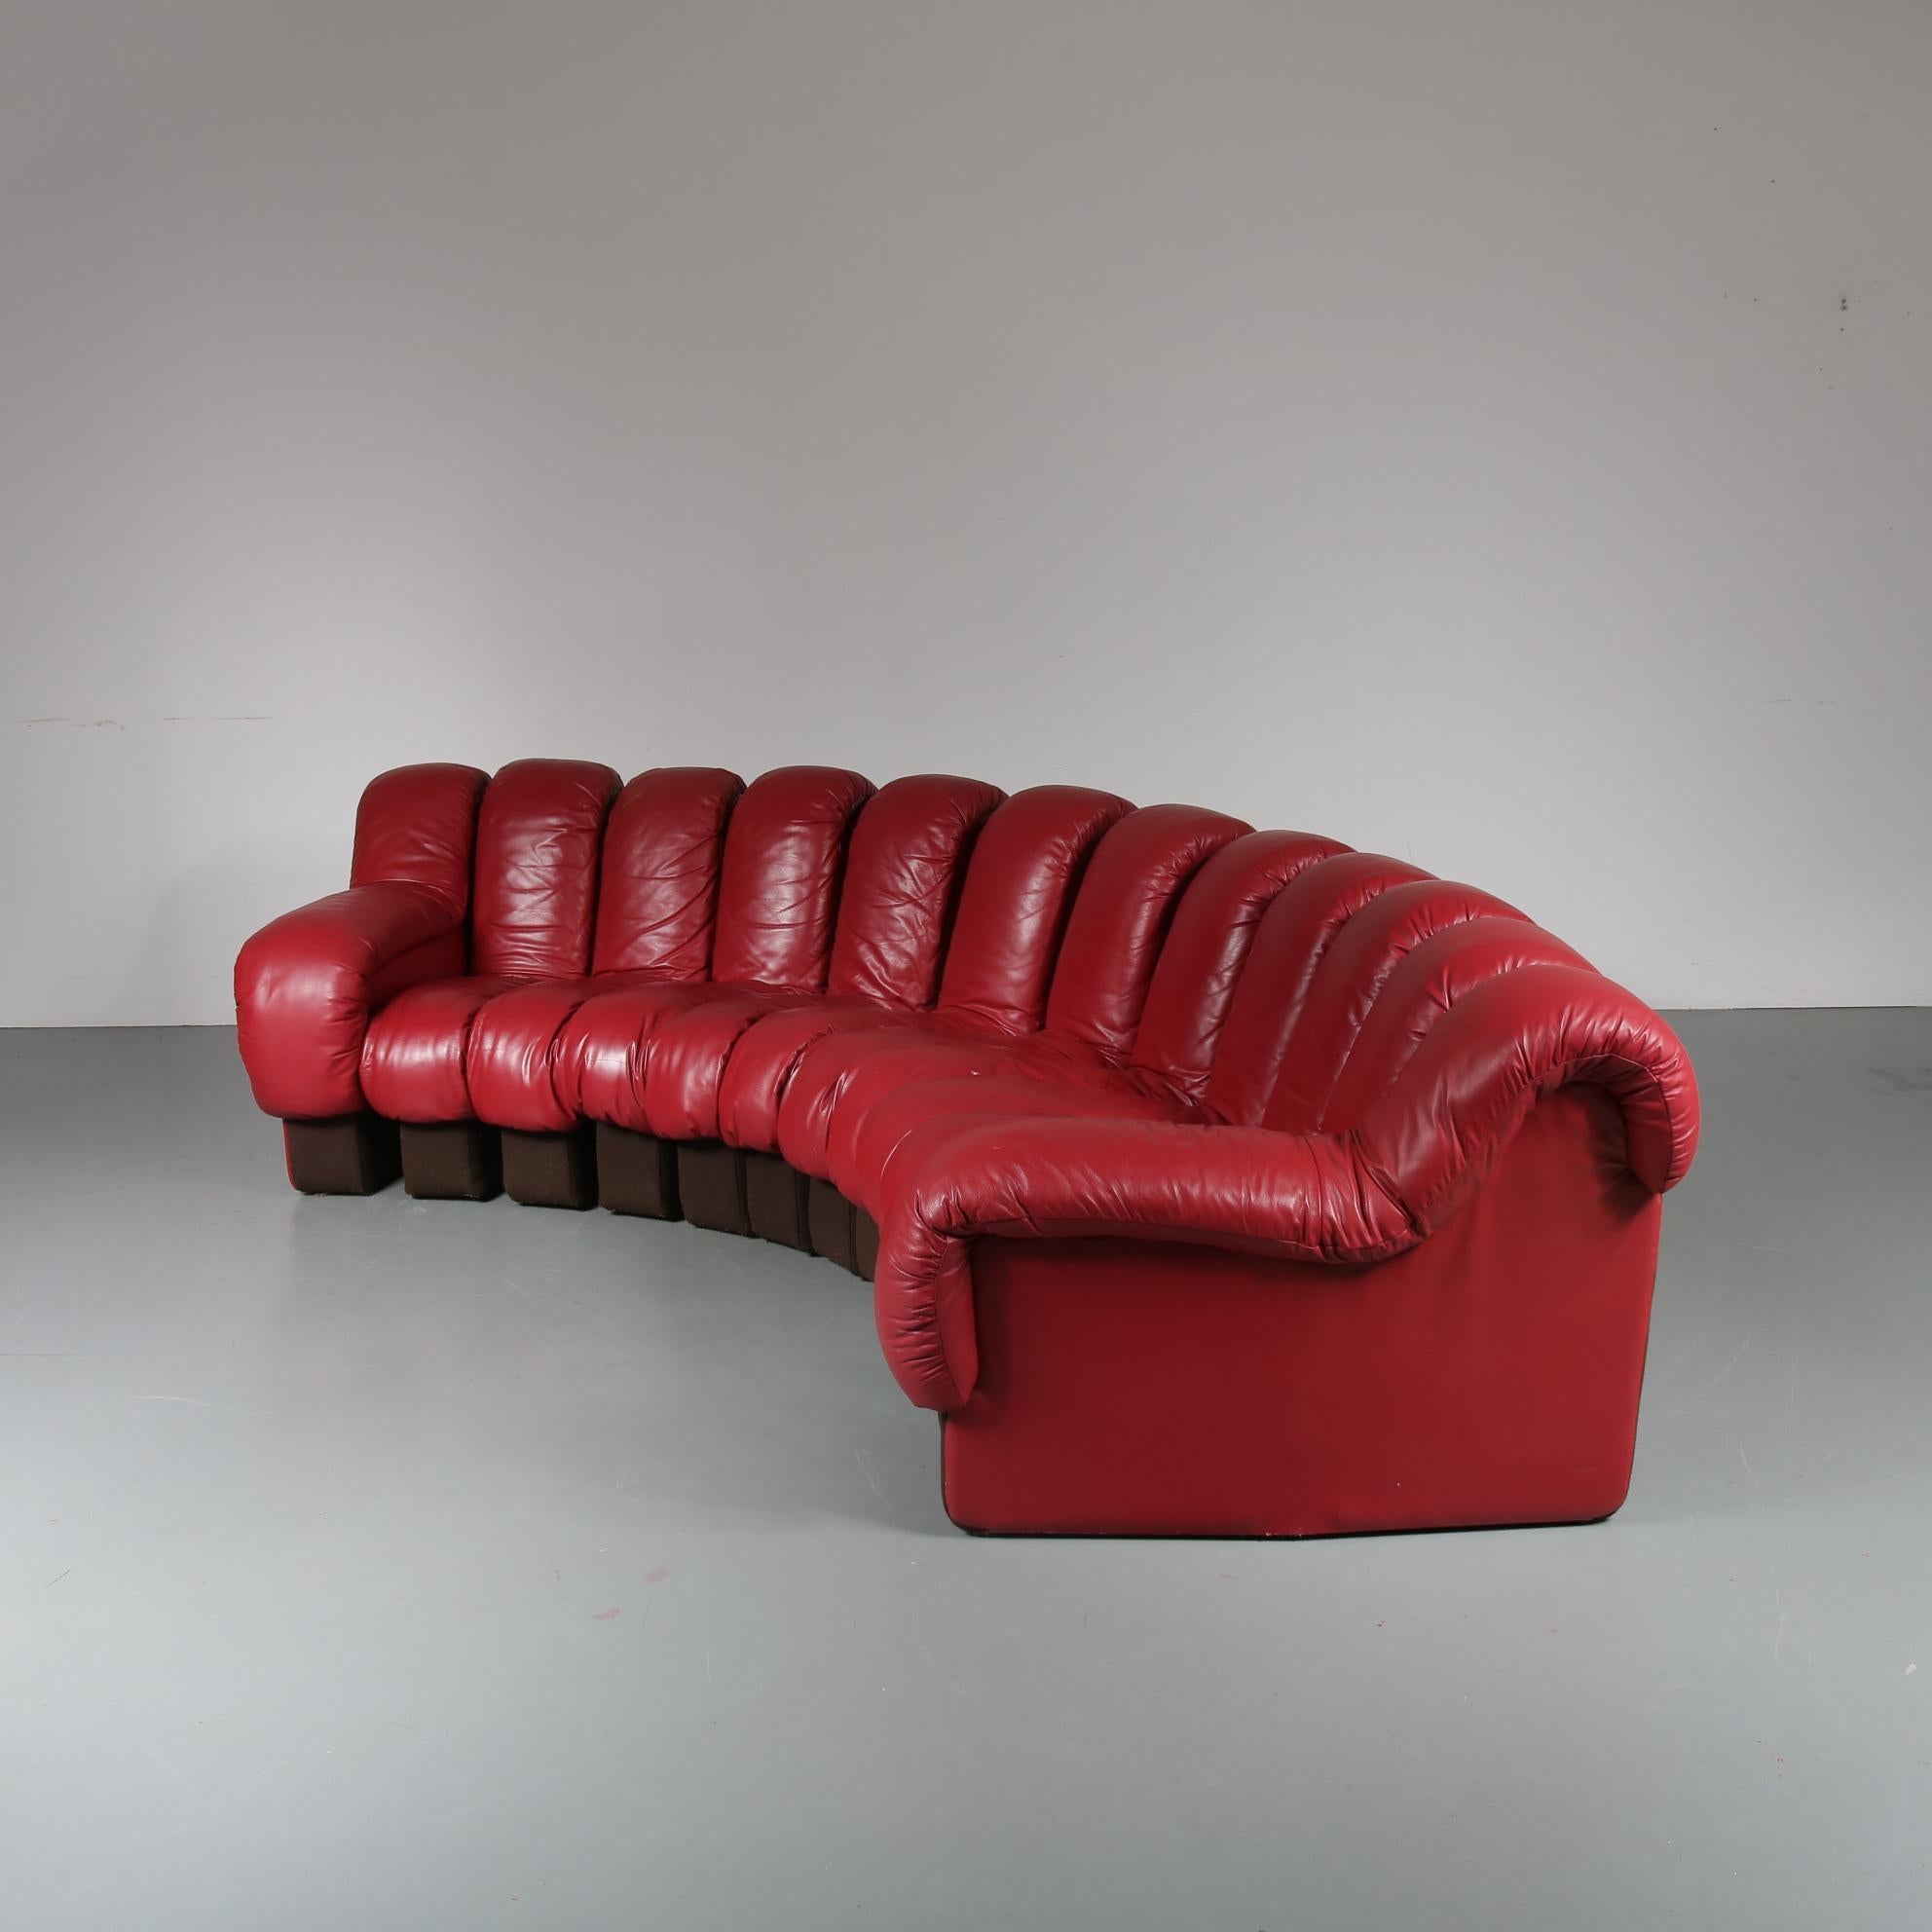 De Sede DS-600 Sofa in Red Leather, Switzerland, 1960 (Schweizerisch)